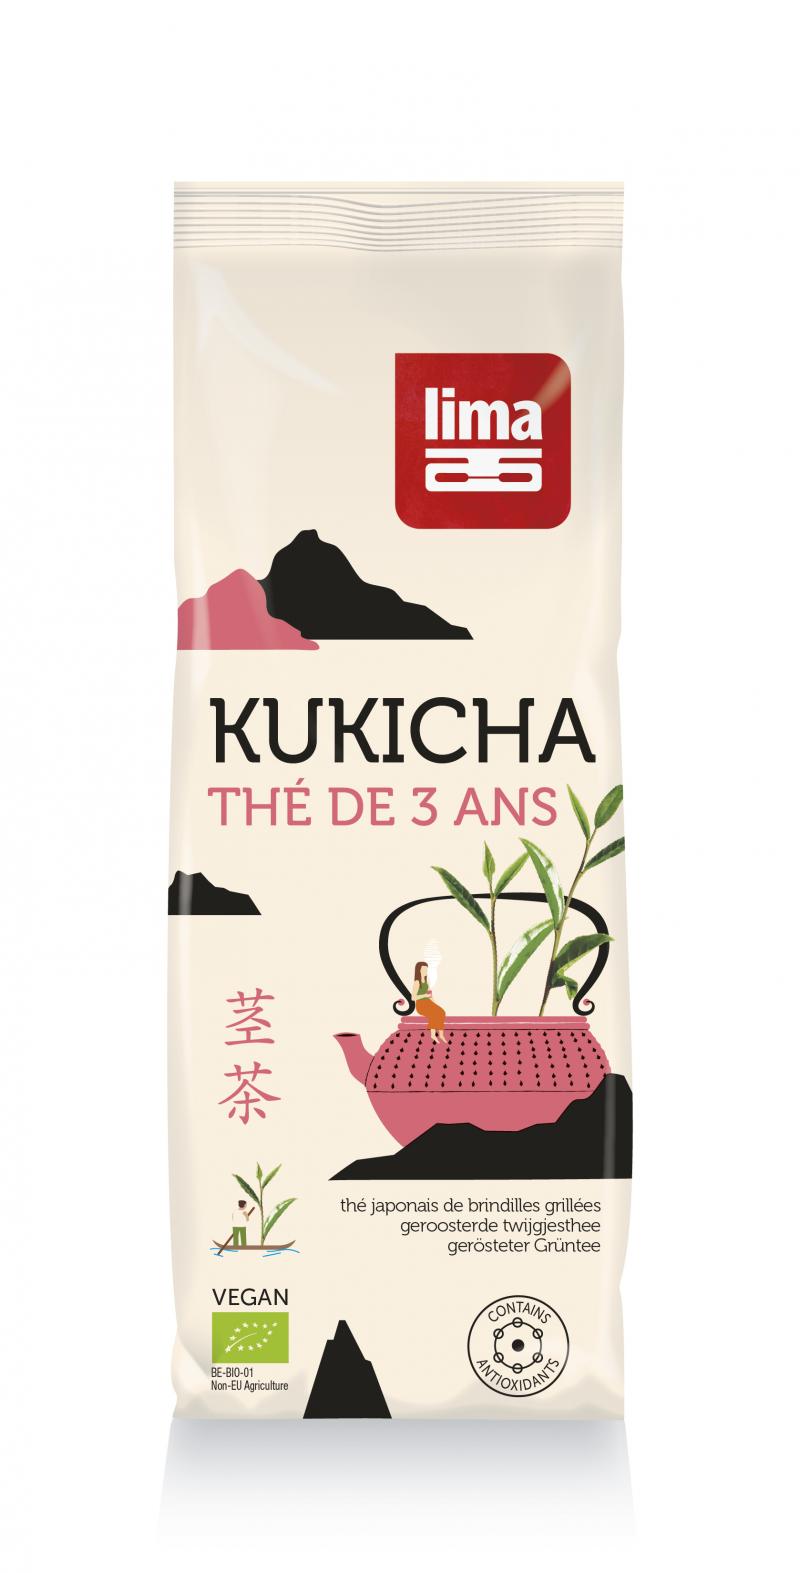 Lima Kukicha thé japonais de brindilles grillées bio 150g